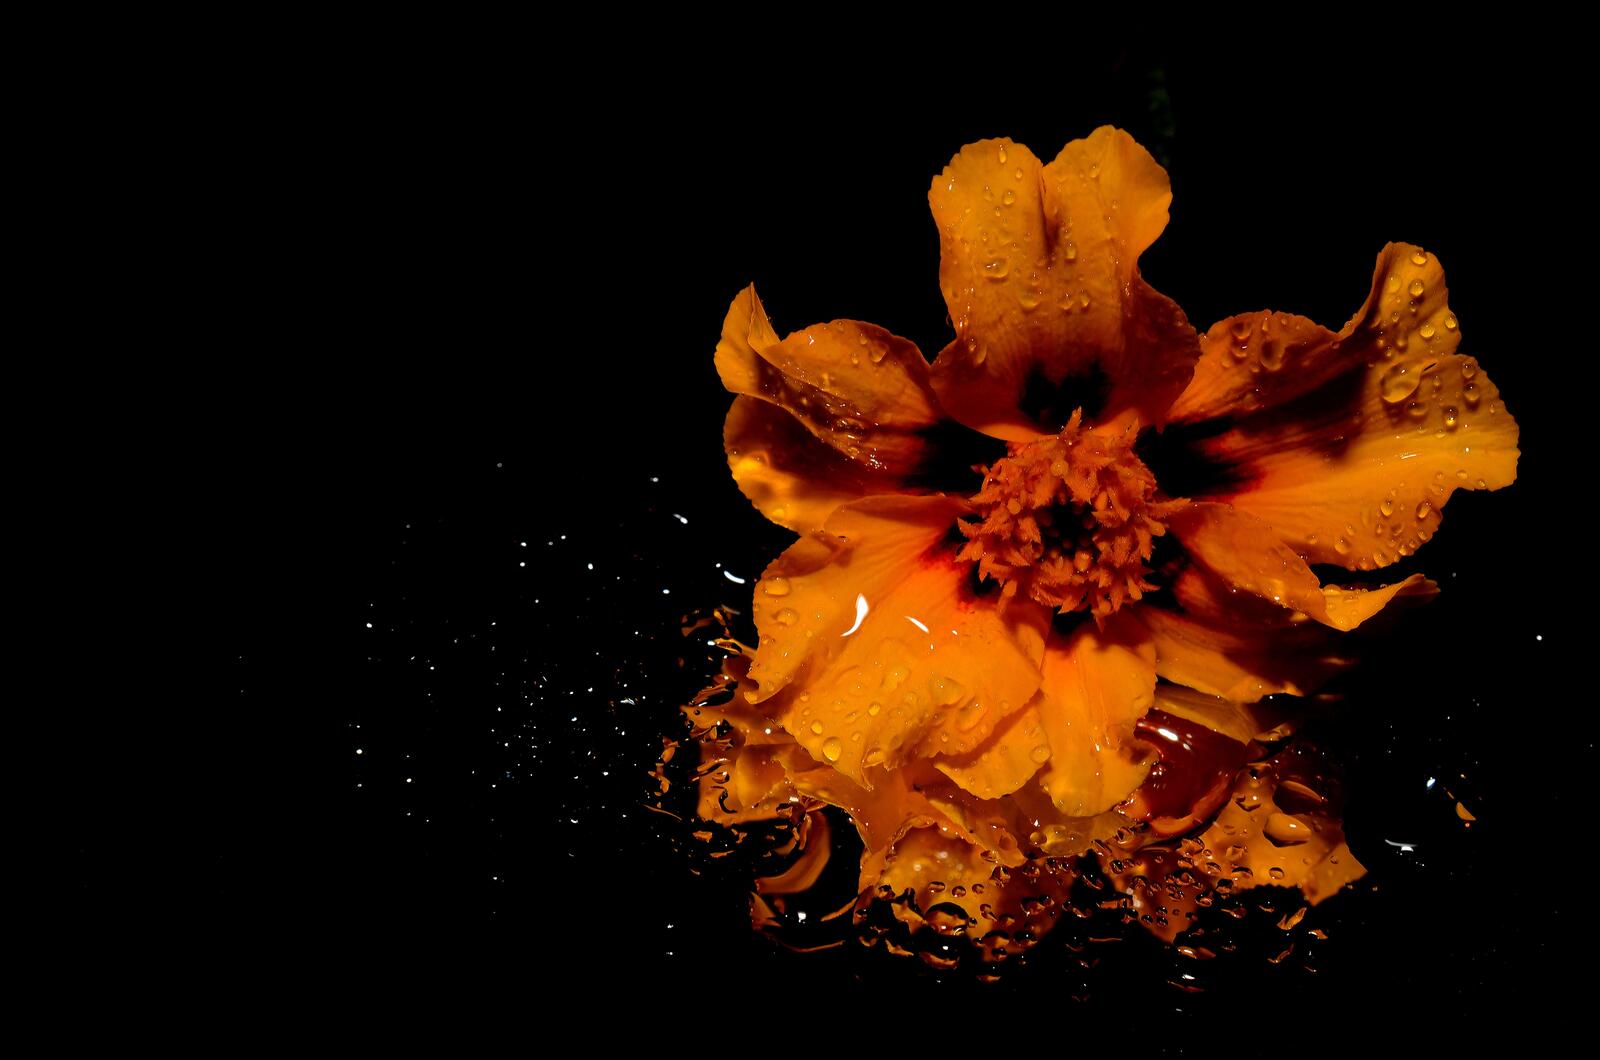 Бесплатное фото Оранжевый цветочек в воде